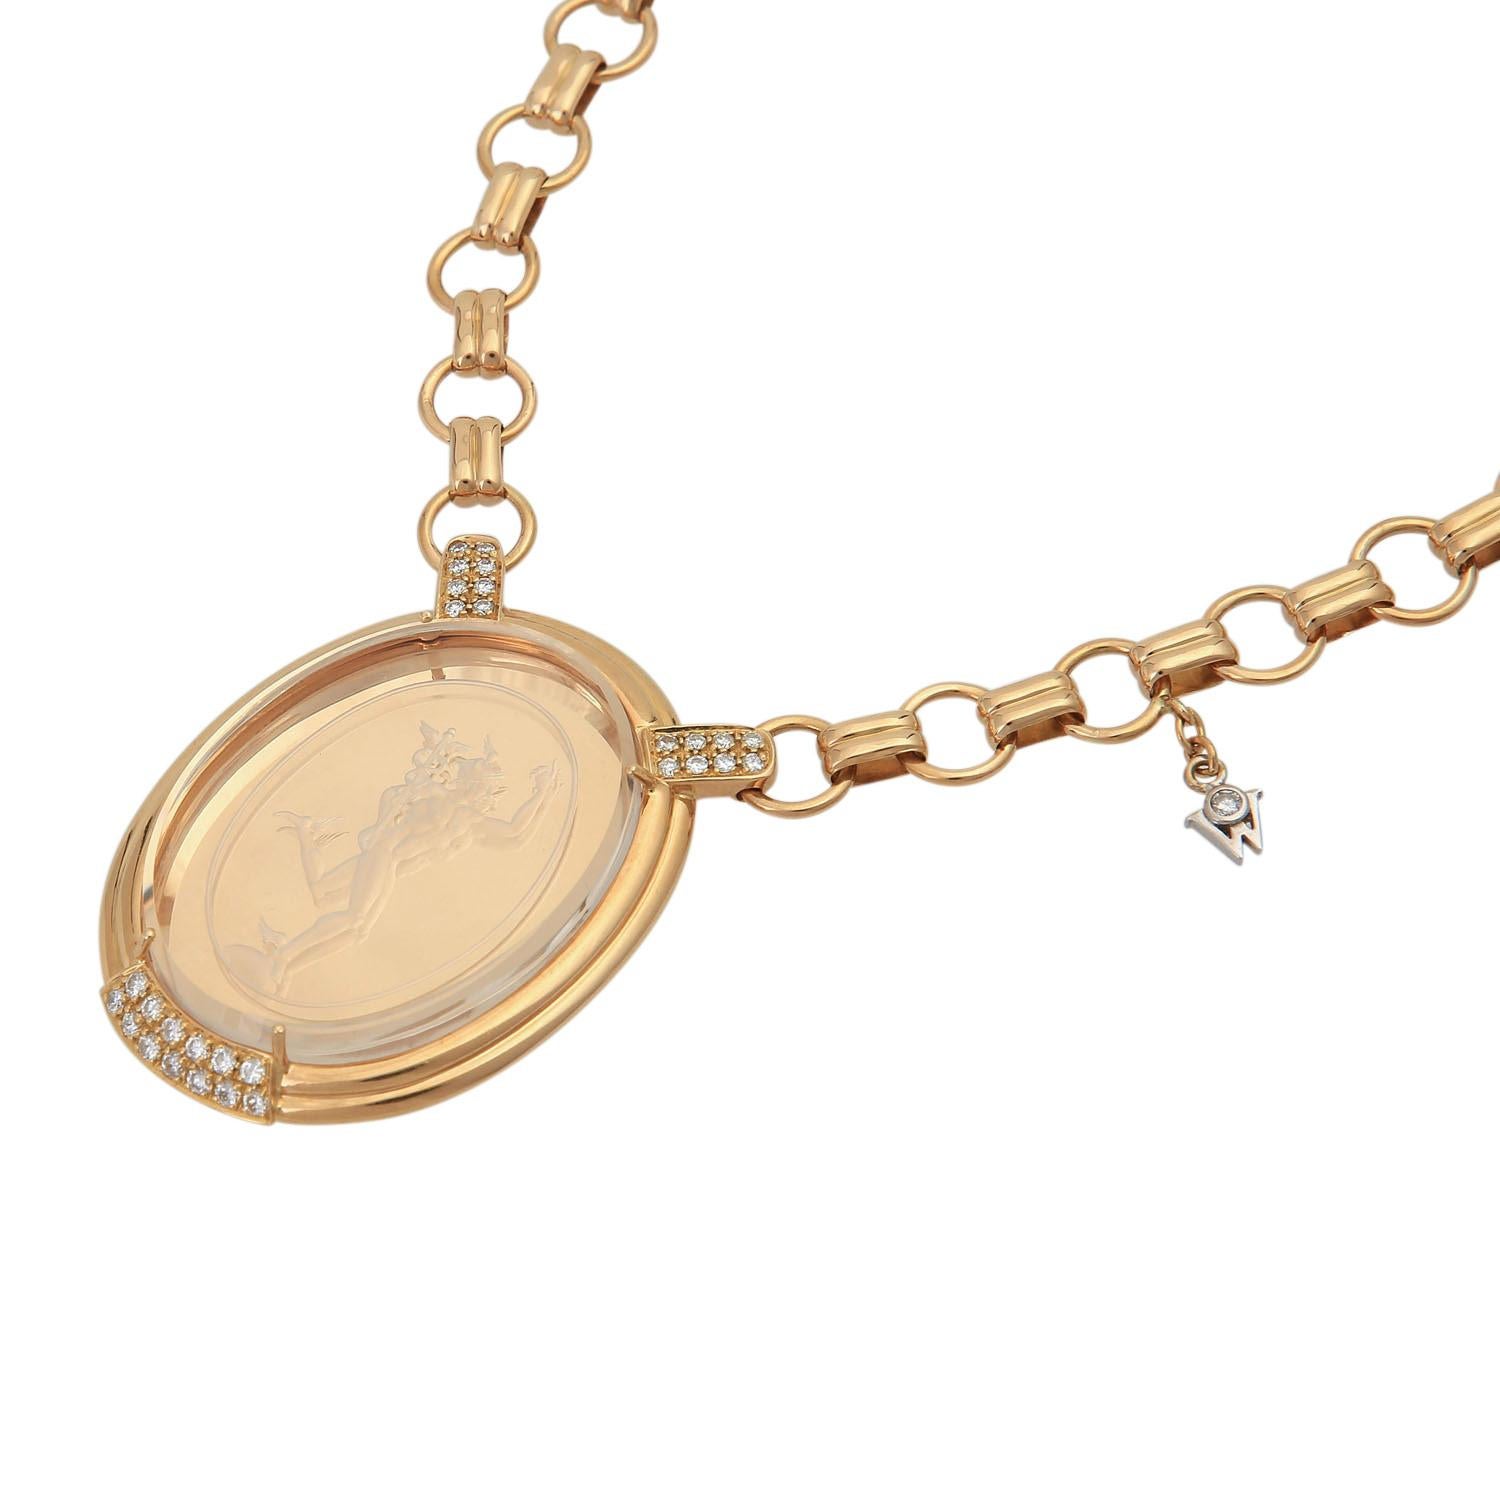 Women's WELLENDORFF necklace with Hermes / Mercury pendant